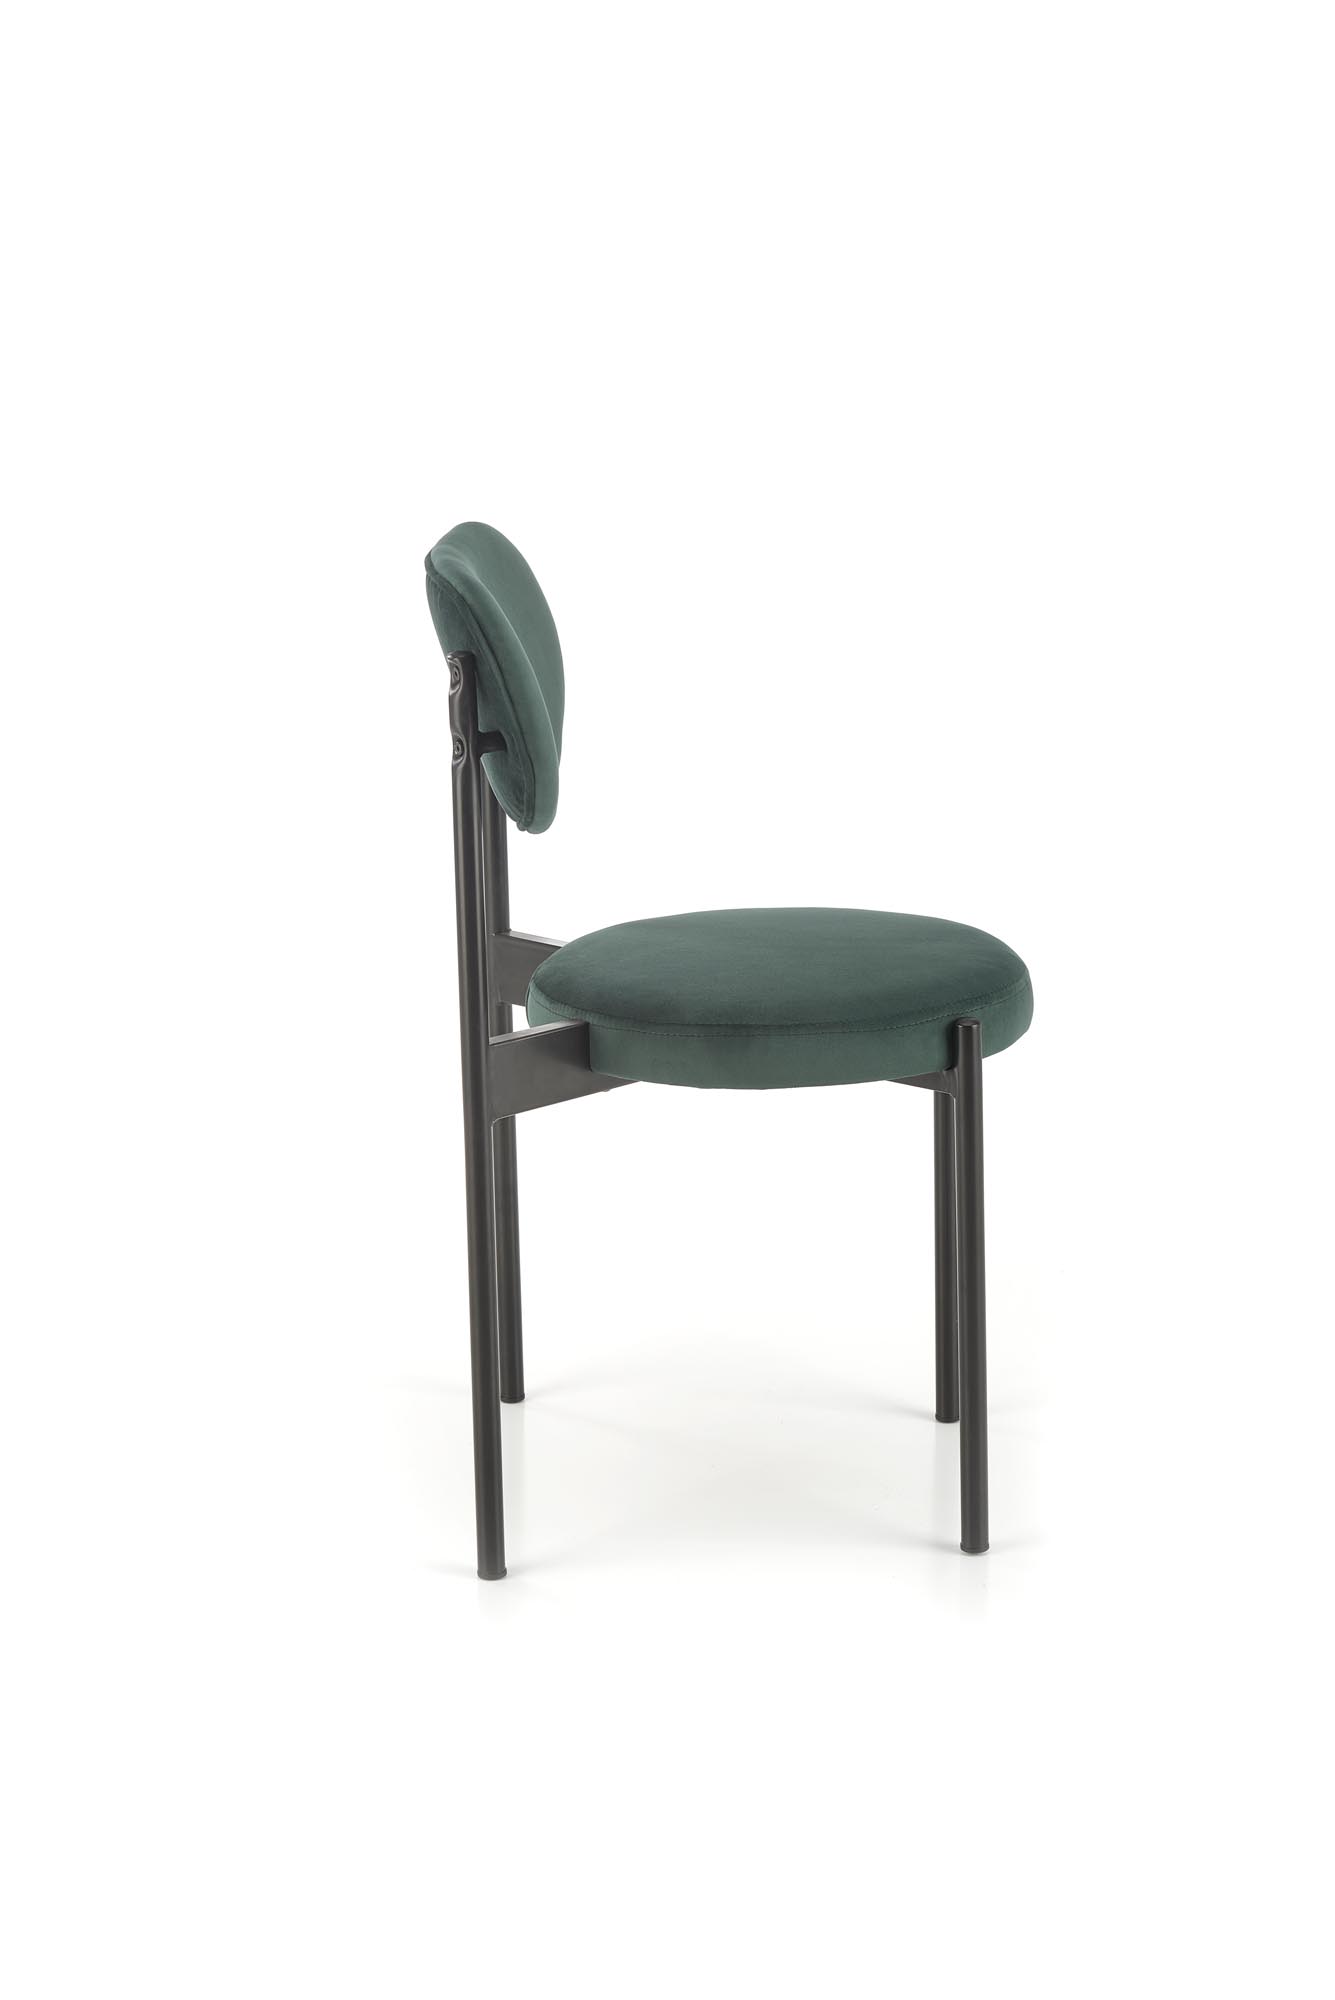 Krzesło tapicerowane K509 - ciemna zieleń krzesło tapicerowane k509 - ciemna zieleń